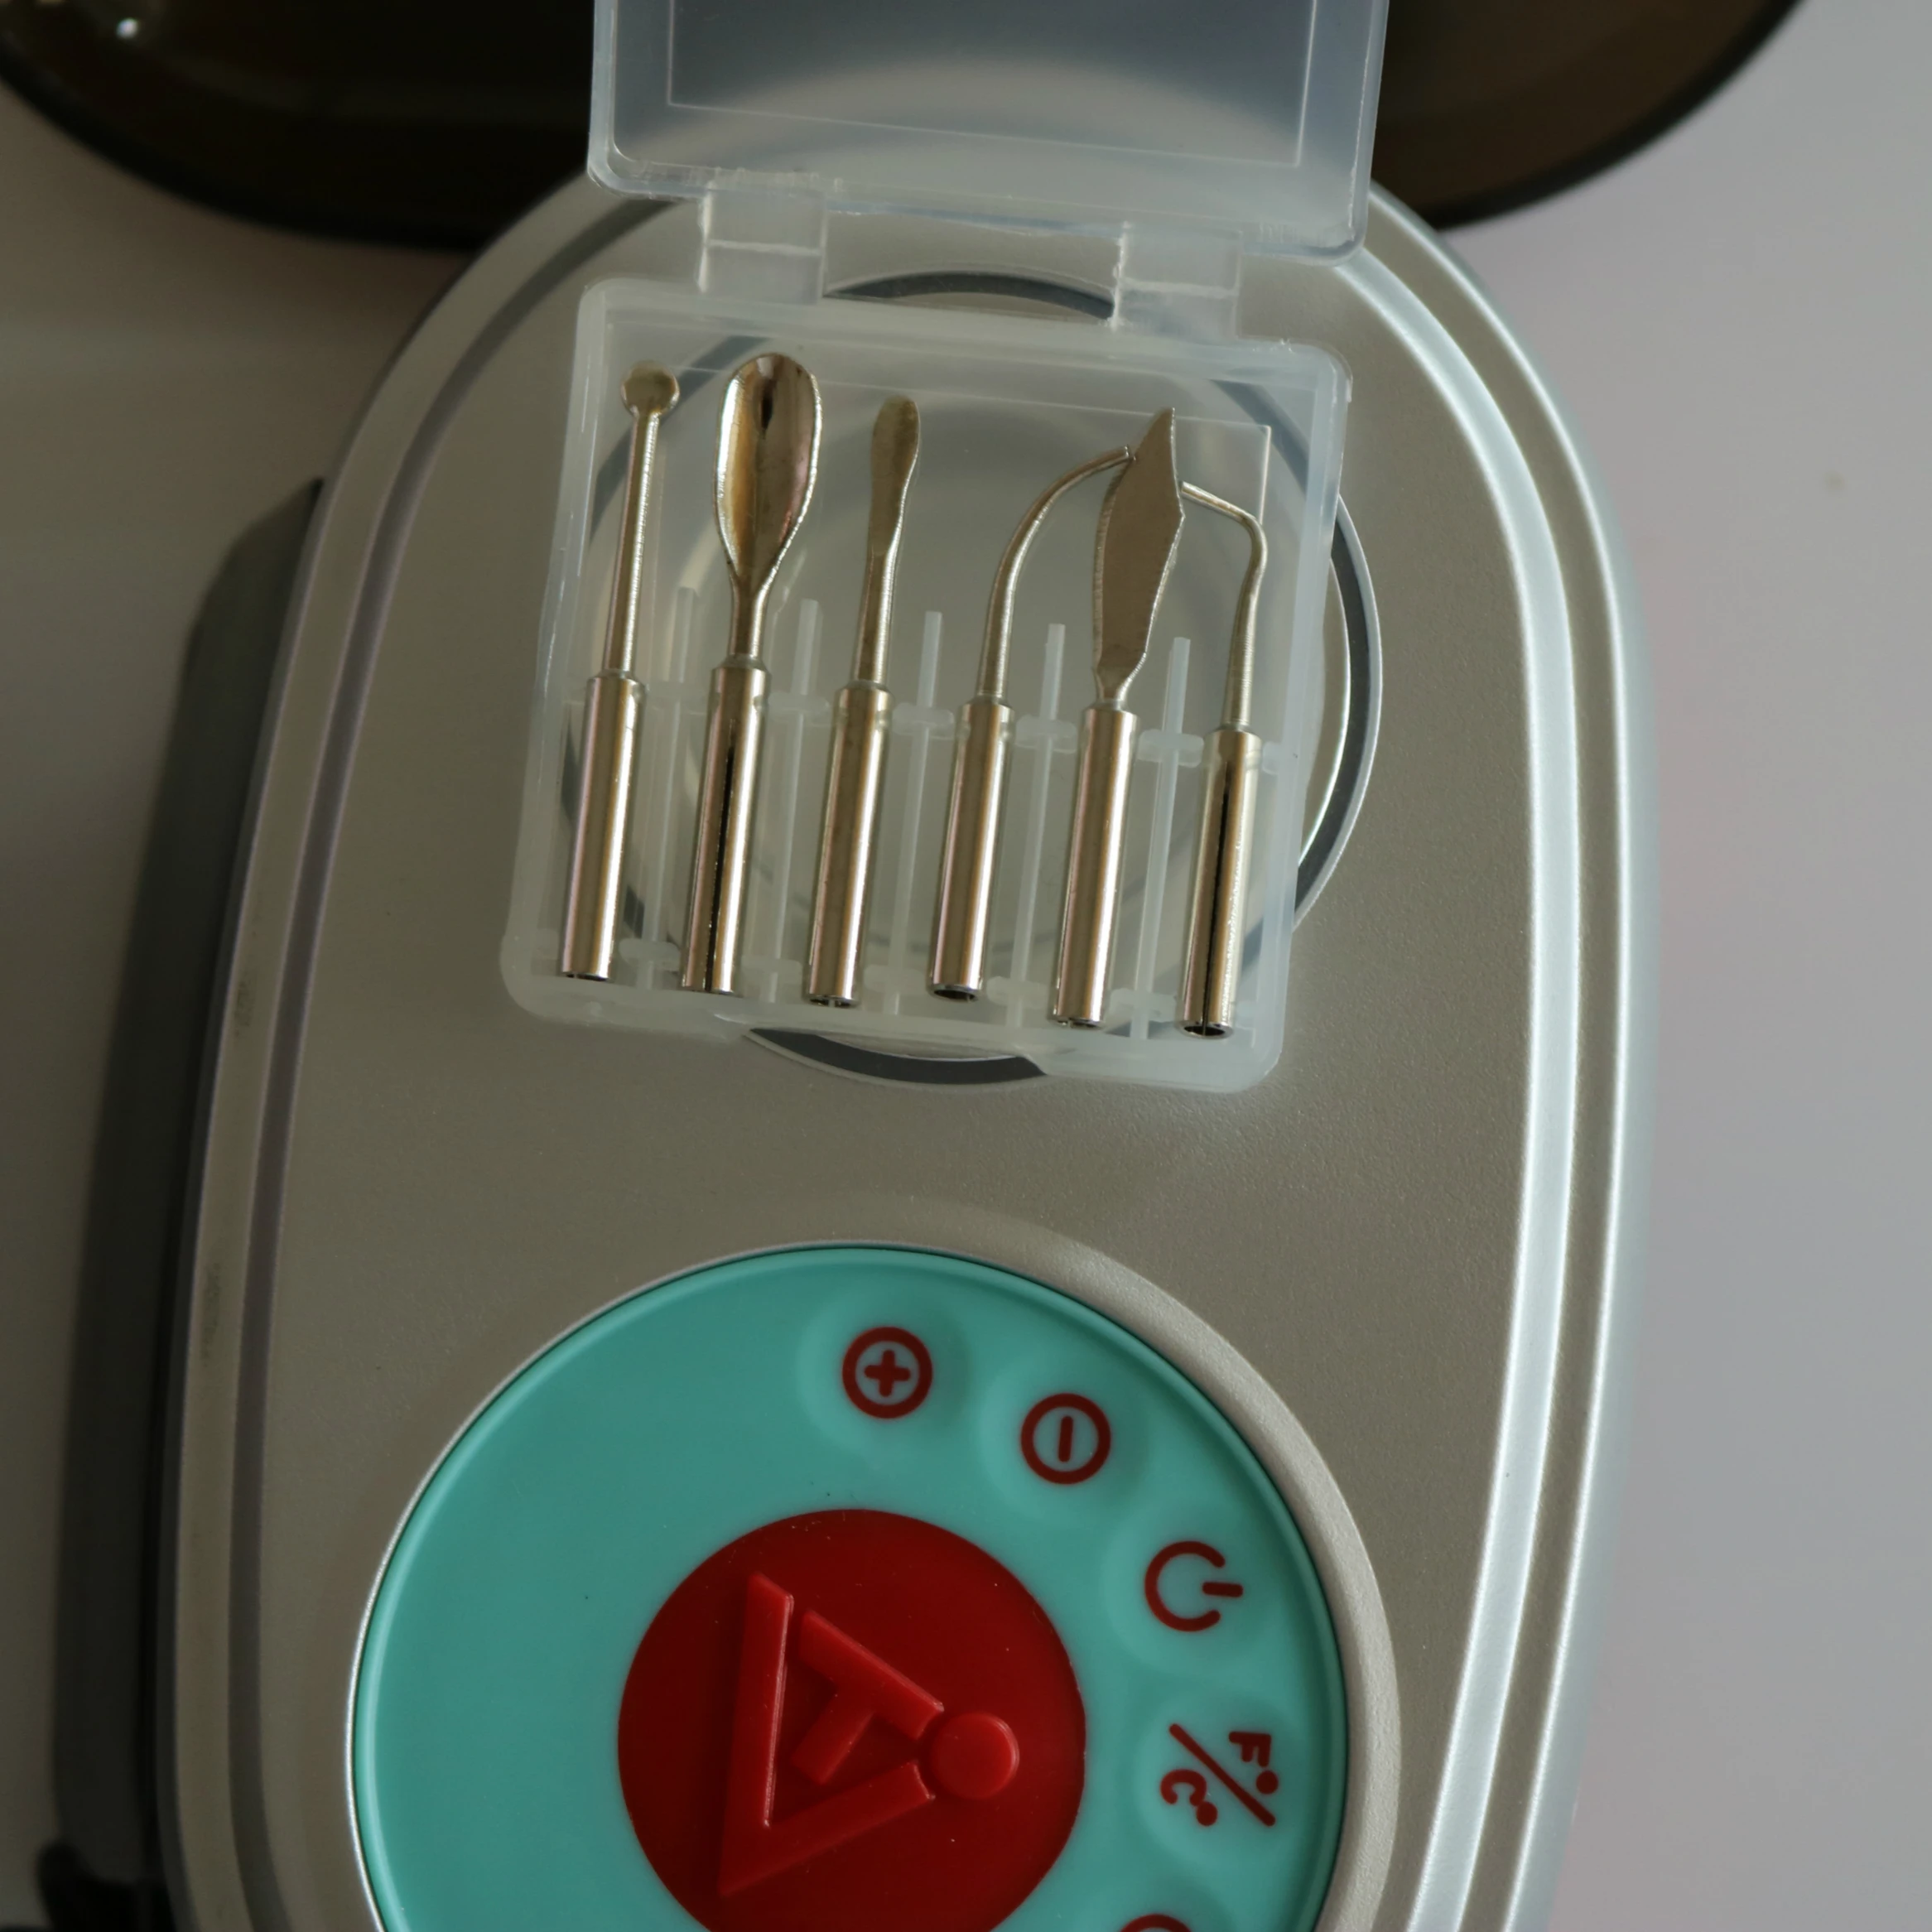 Воск резьбы Набор 2 в 1 воском блок банка с воском аналоговый нагреватель мелтер с Waxer резьба нож ручка резчик оборудование для стоматологической лаборатории